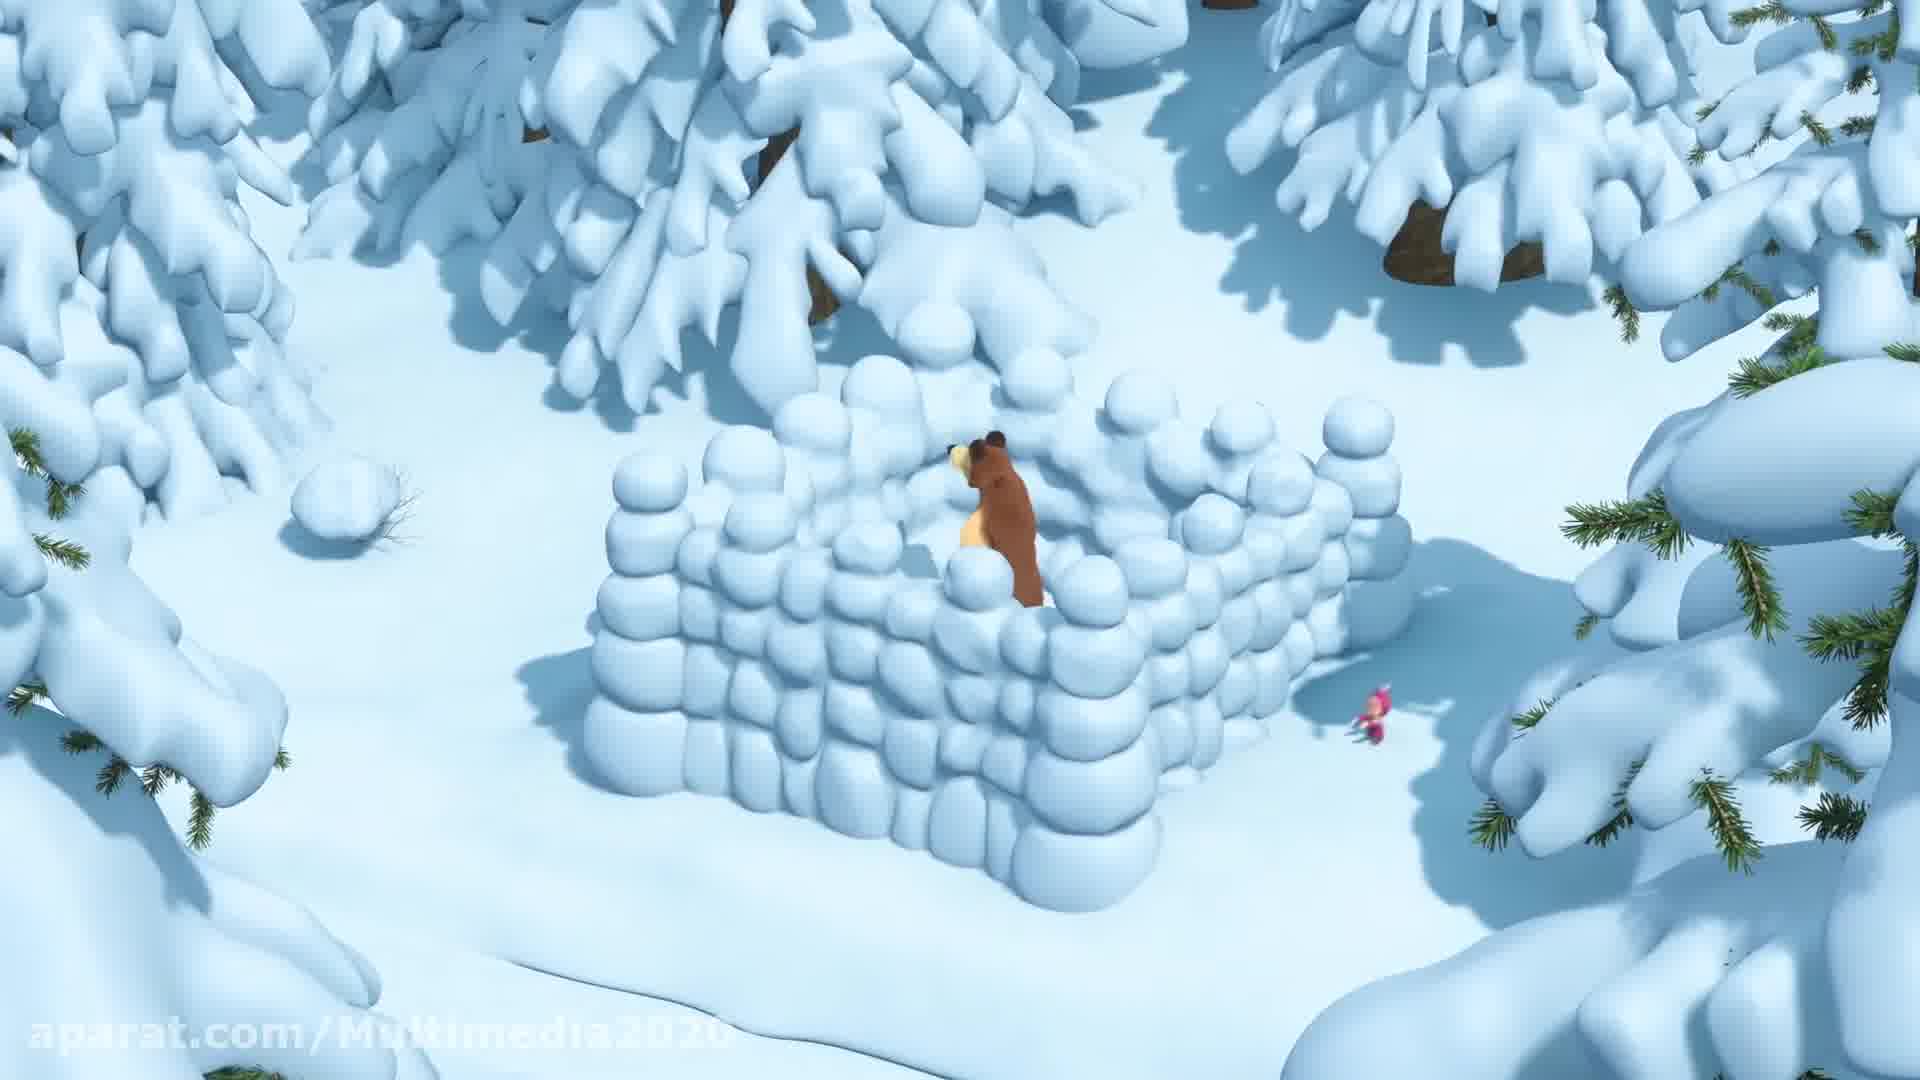 انیمیشن ماشا و آقا خرسه - سرود کریسمس